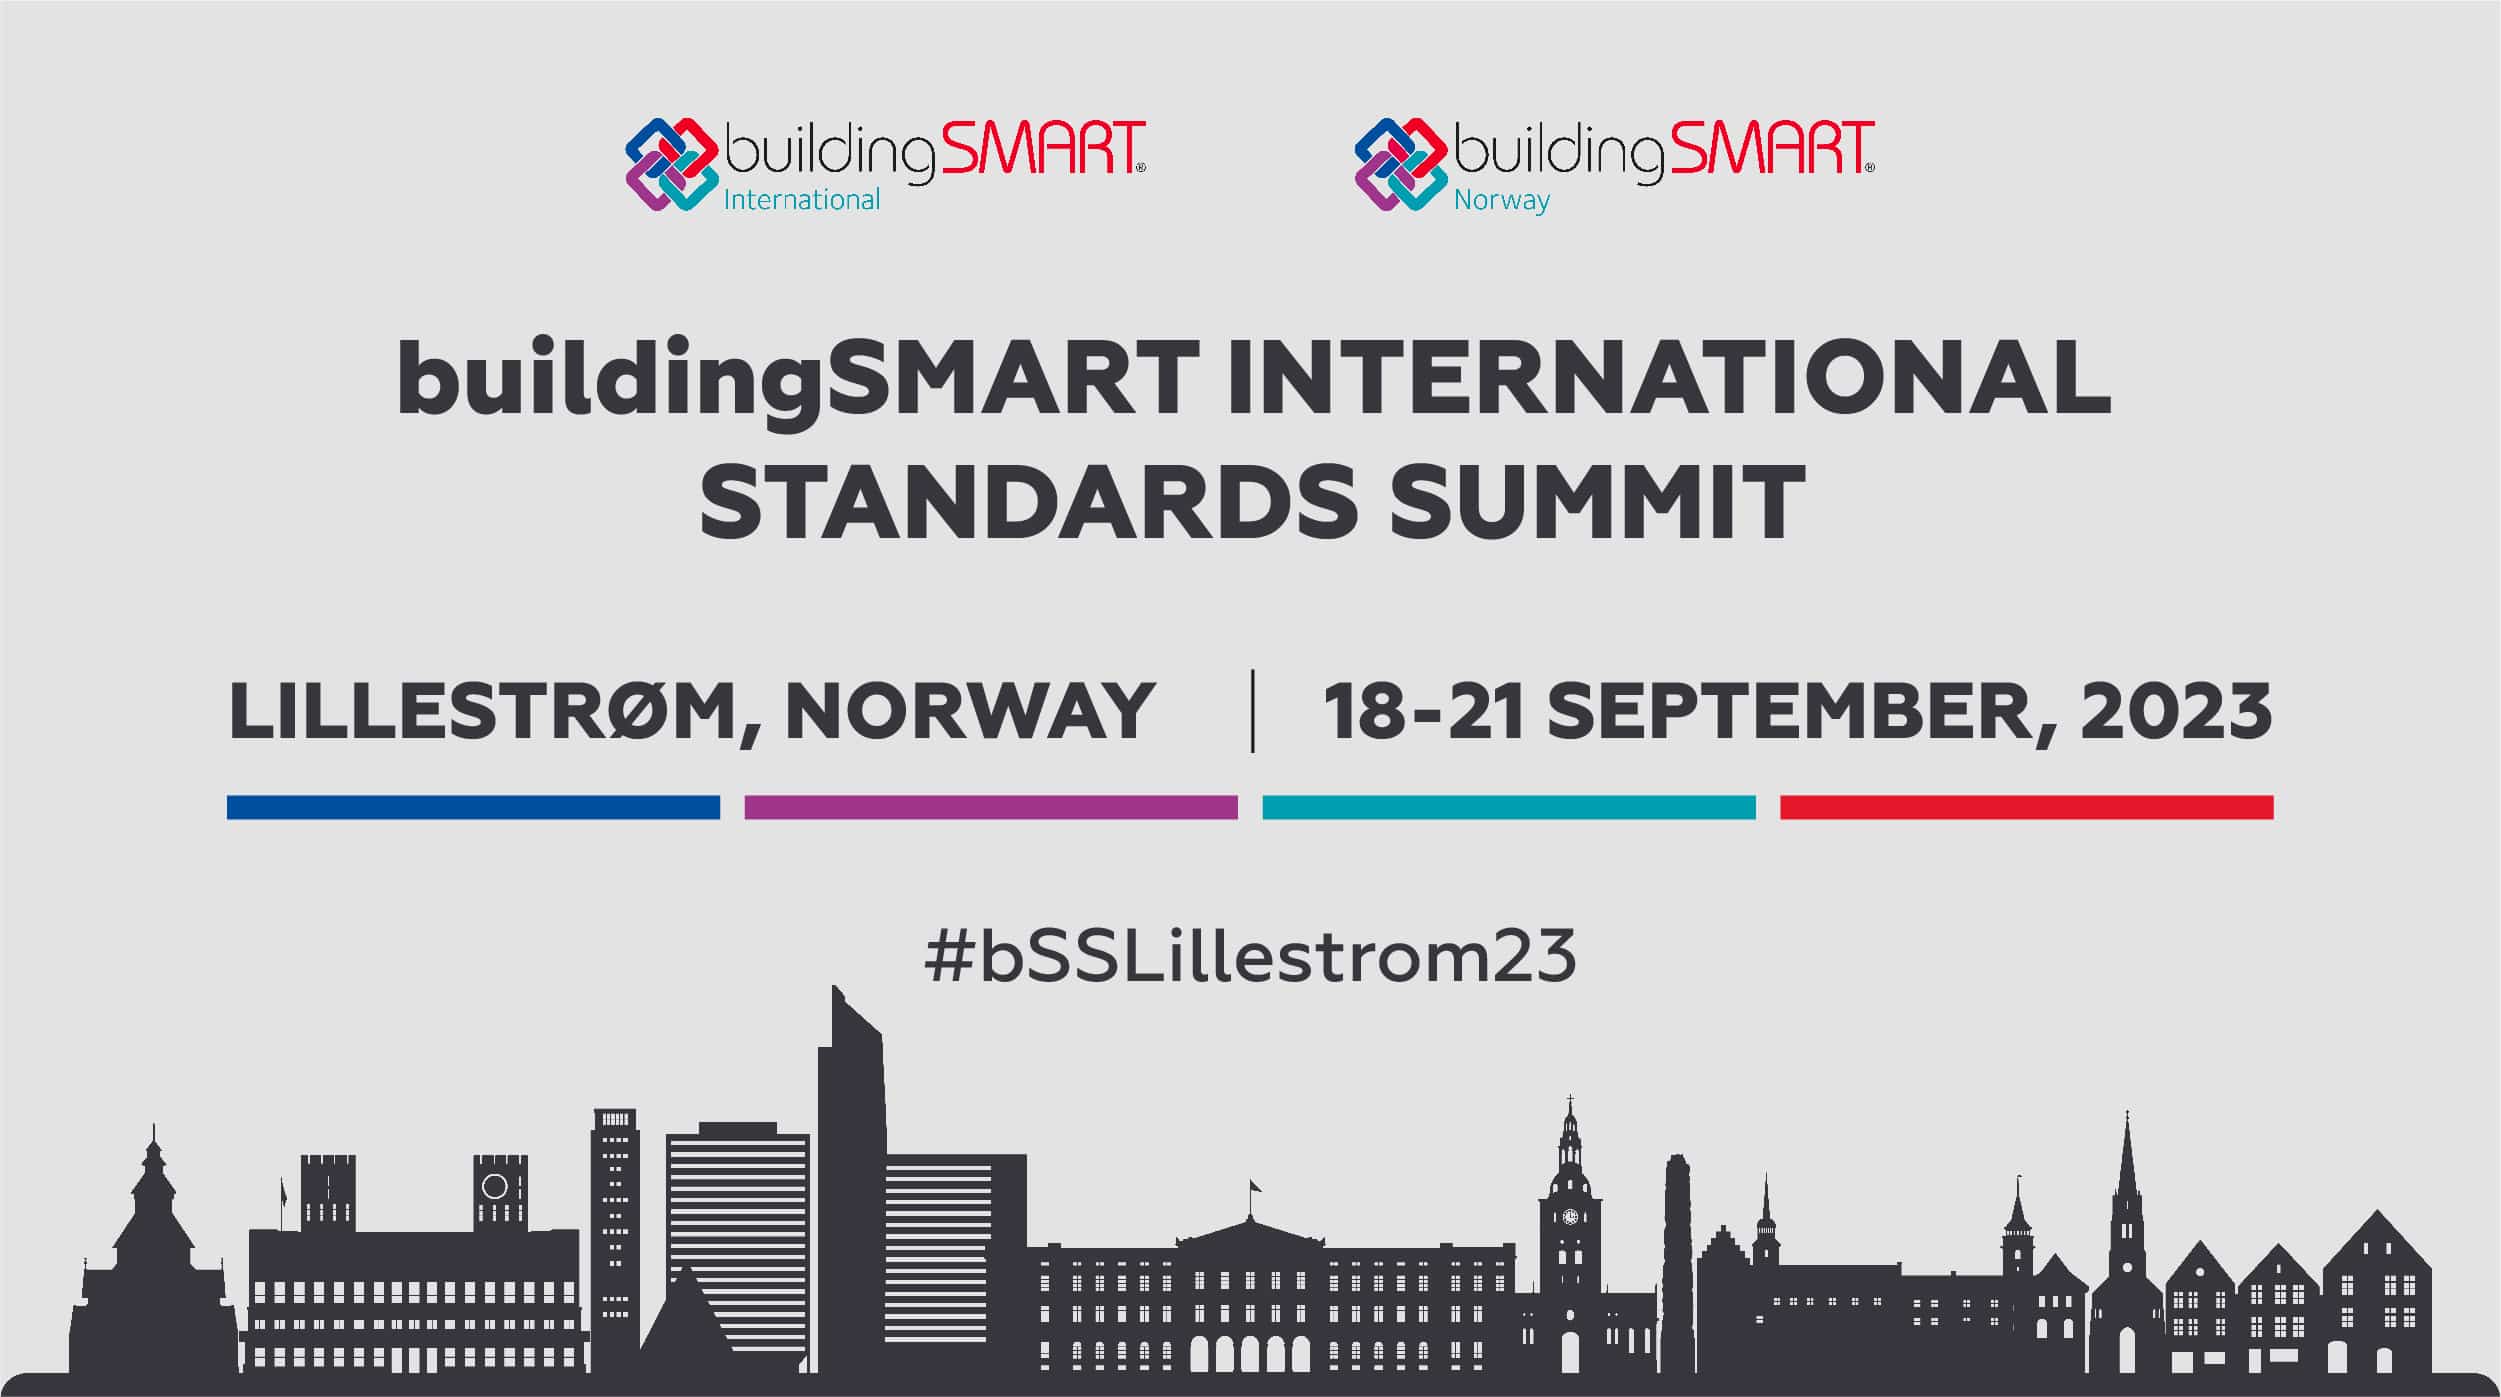 Le conferenze autunnali di BuildingSMART 2023 saranno un summit internazionale sugli standard intelligenti.